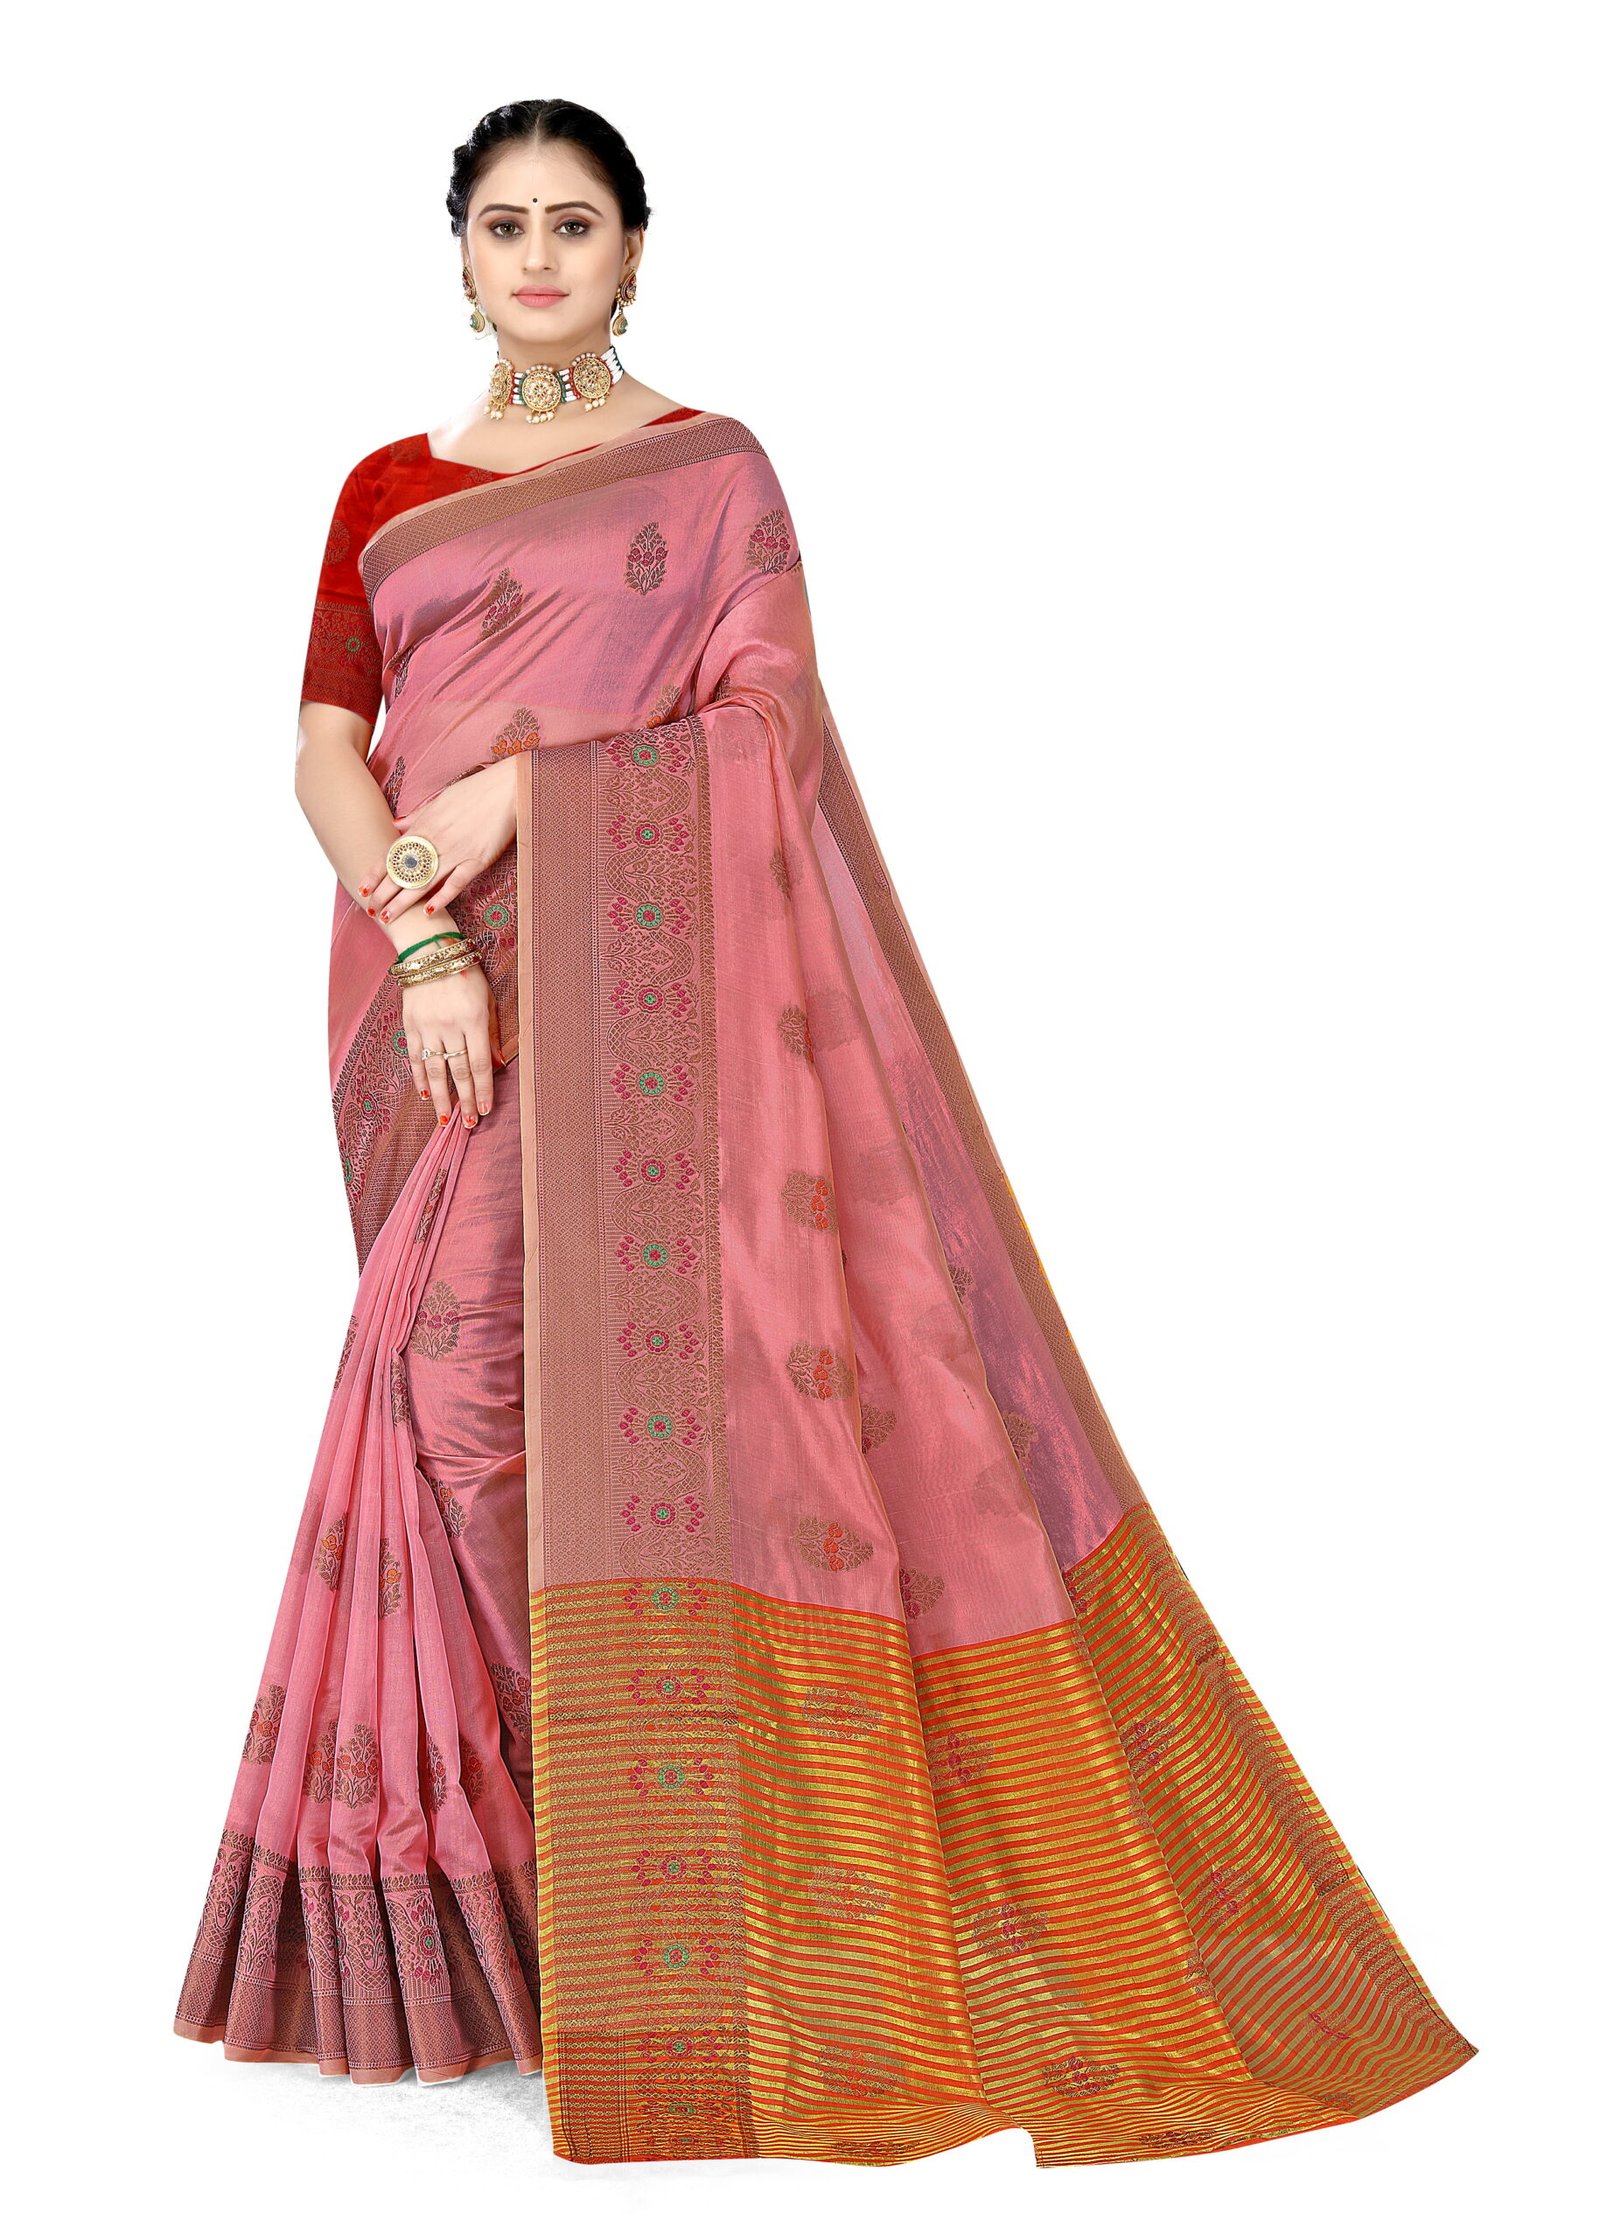 Cotton Dress Materials Below Rs500 - Buy Cotton Dress Materials Below Rs500  online at Best Prices in India | Flipkart.com